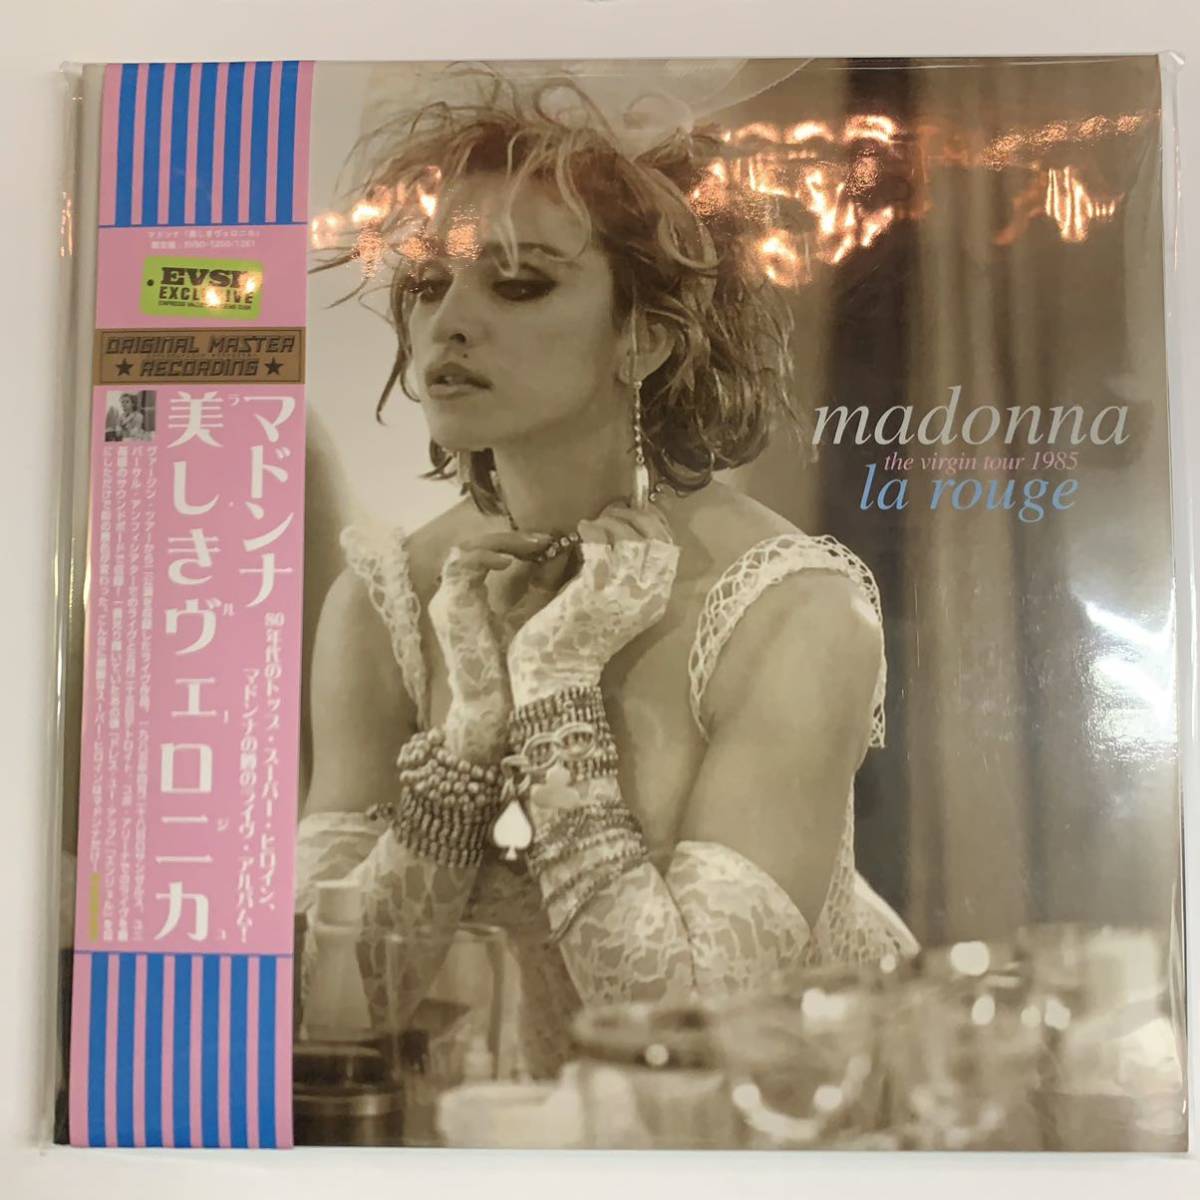 MADONNA / la rouge the virgin tour 1985「美しきヴェロニカ」2CD 7インチサイズのラージジャケット！限定特価！最高のライヴアルバム！